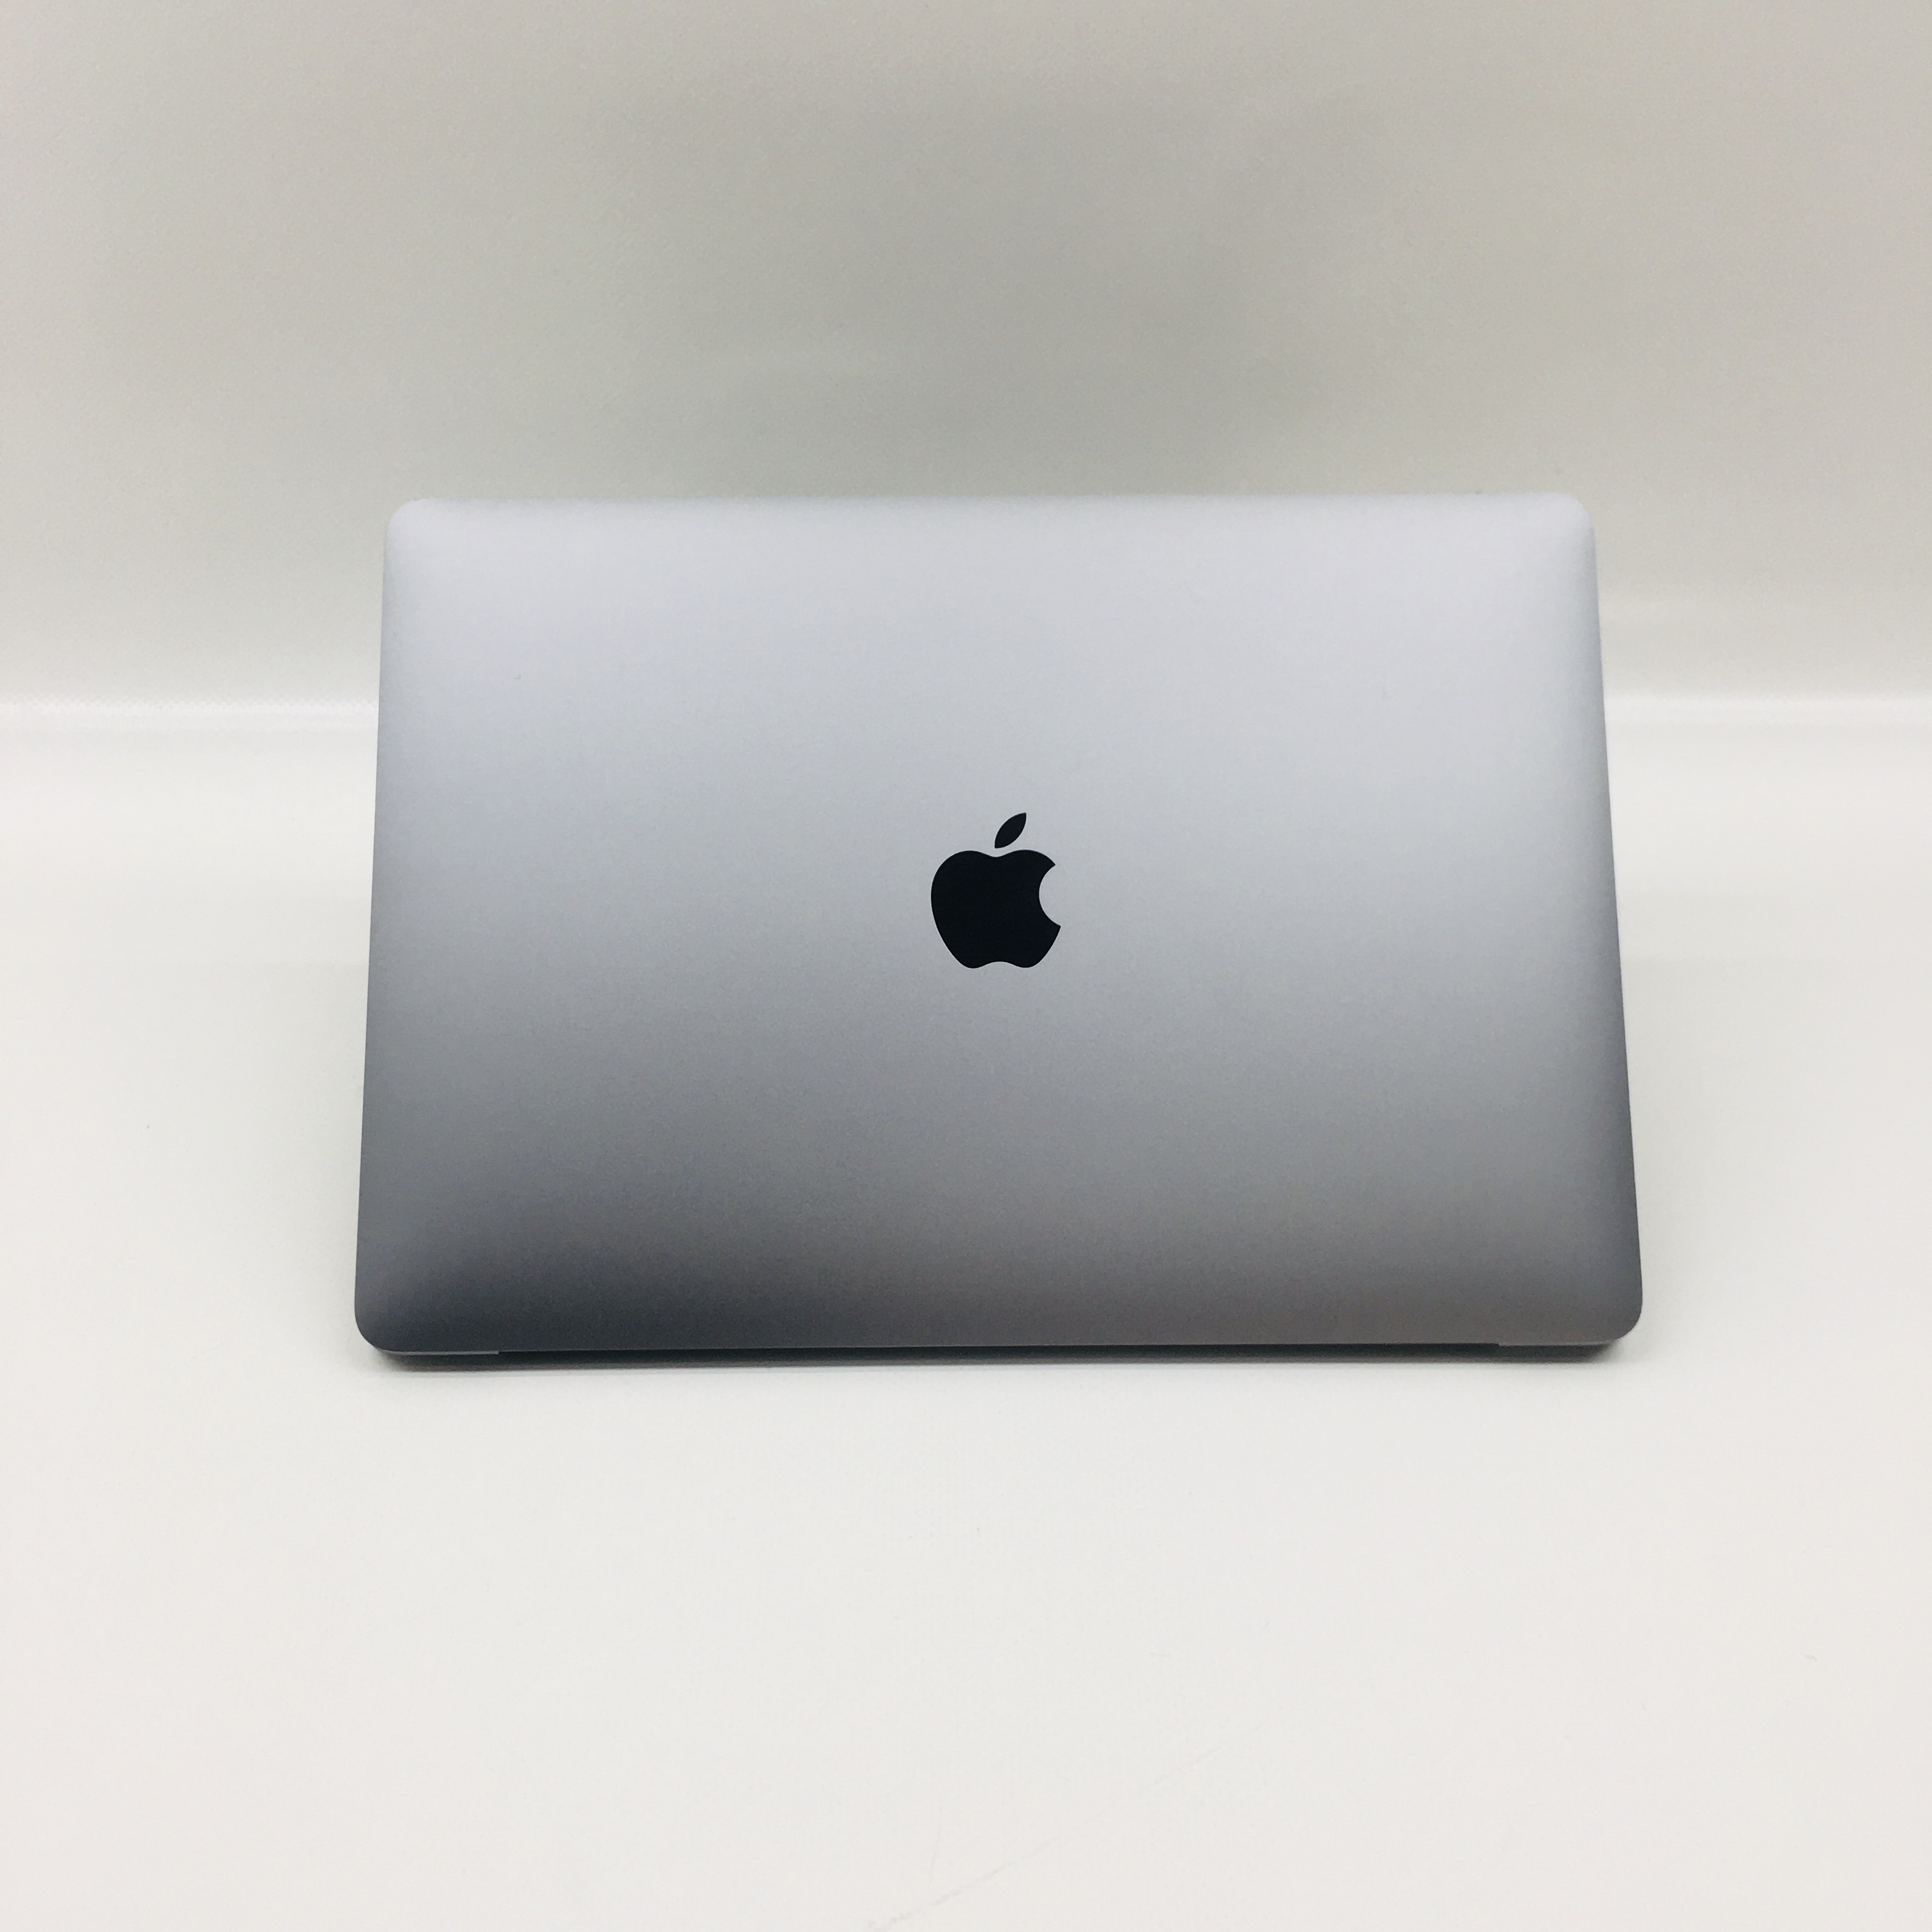 MacBook Pro 13" 4TBT Mid 2019 (Intel Quad-Core i5 2.4 GHz 8 GB RAM 512 GB SSD), Space Gray, Intel Quad-Core i5 2.4 GHz, 8 GB RAM, 512 GB SSD, image 3